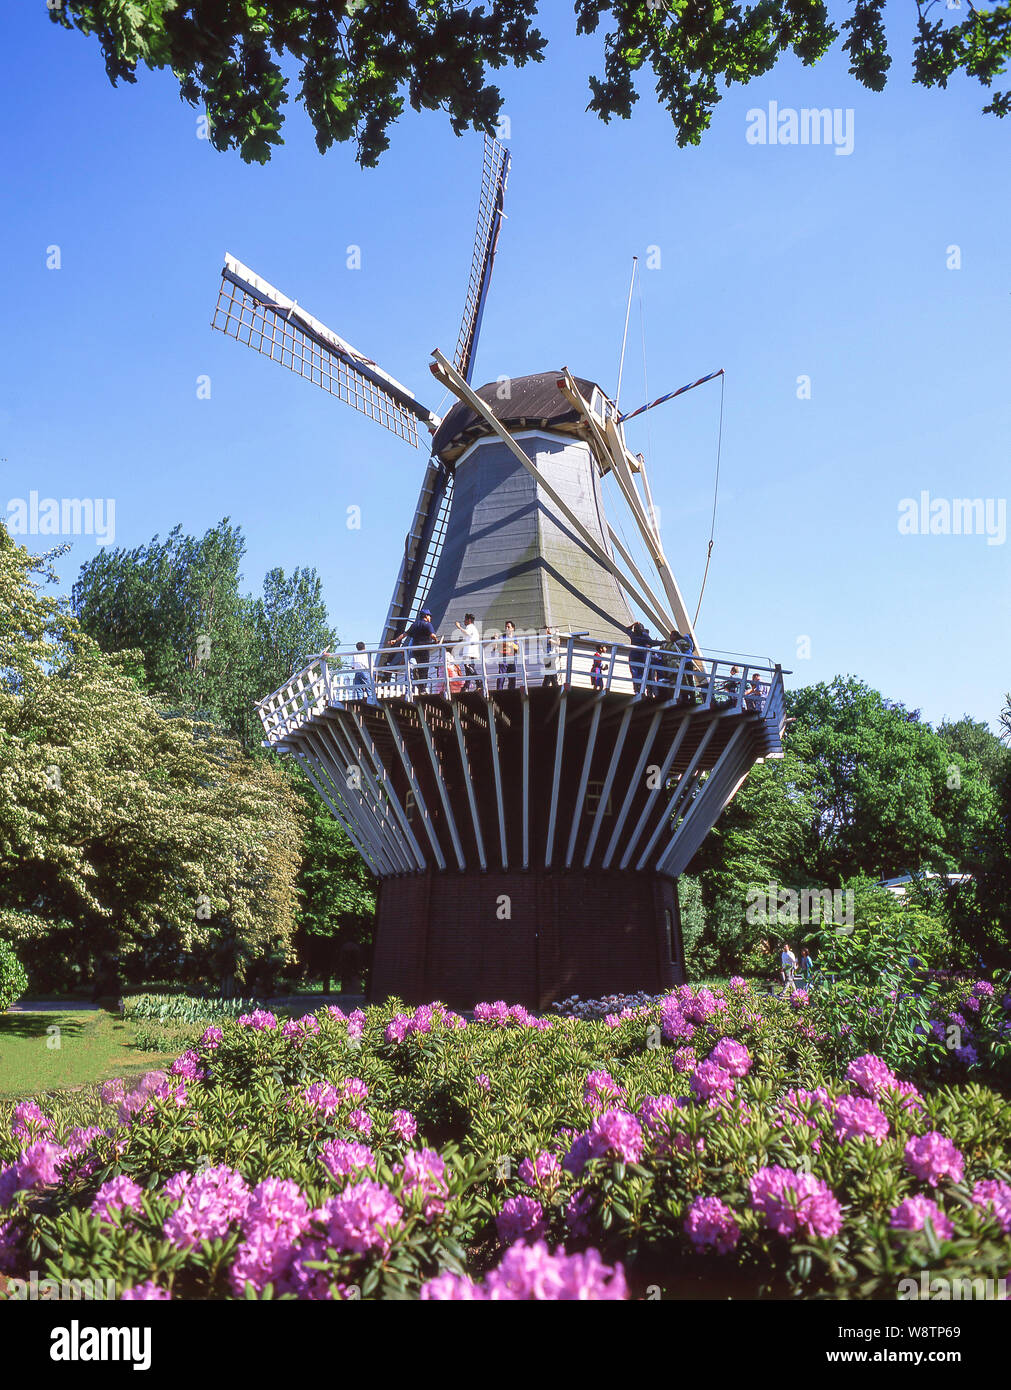 Mulino a vento in giardini Keukenhof Lisse, South Holland (Zuid-Holland), il Regno dei Paesi Bassi Foto Stock